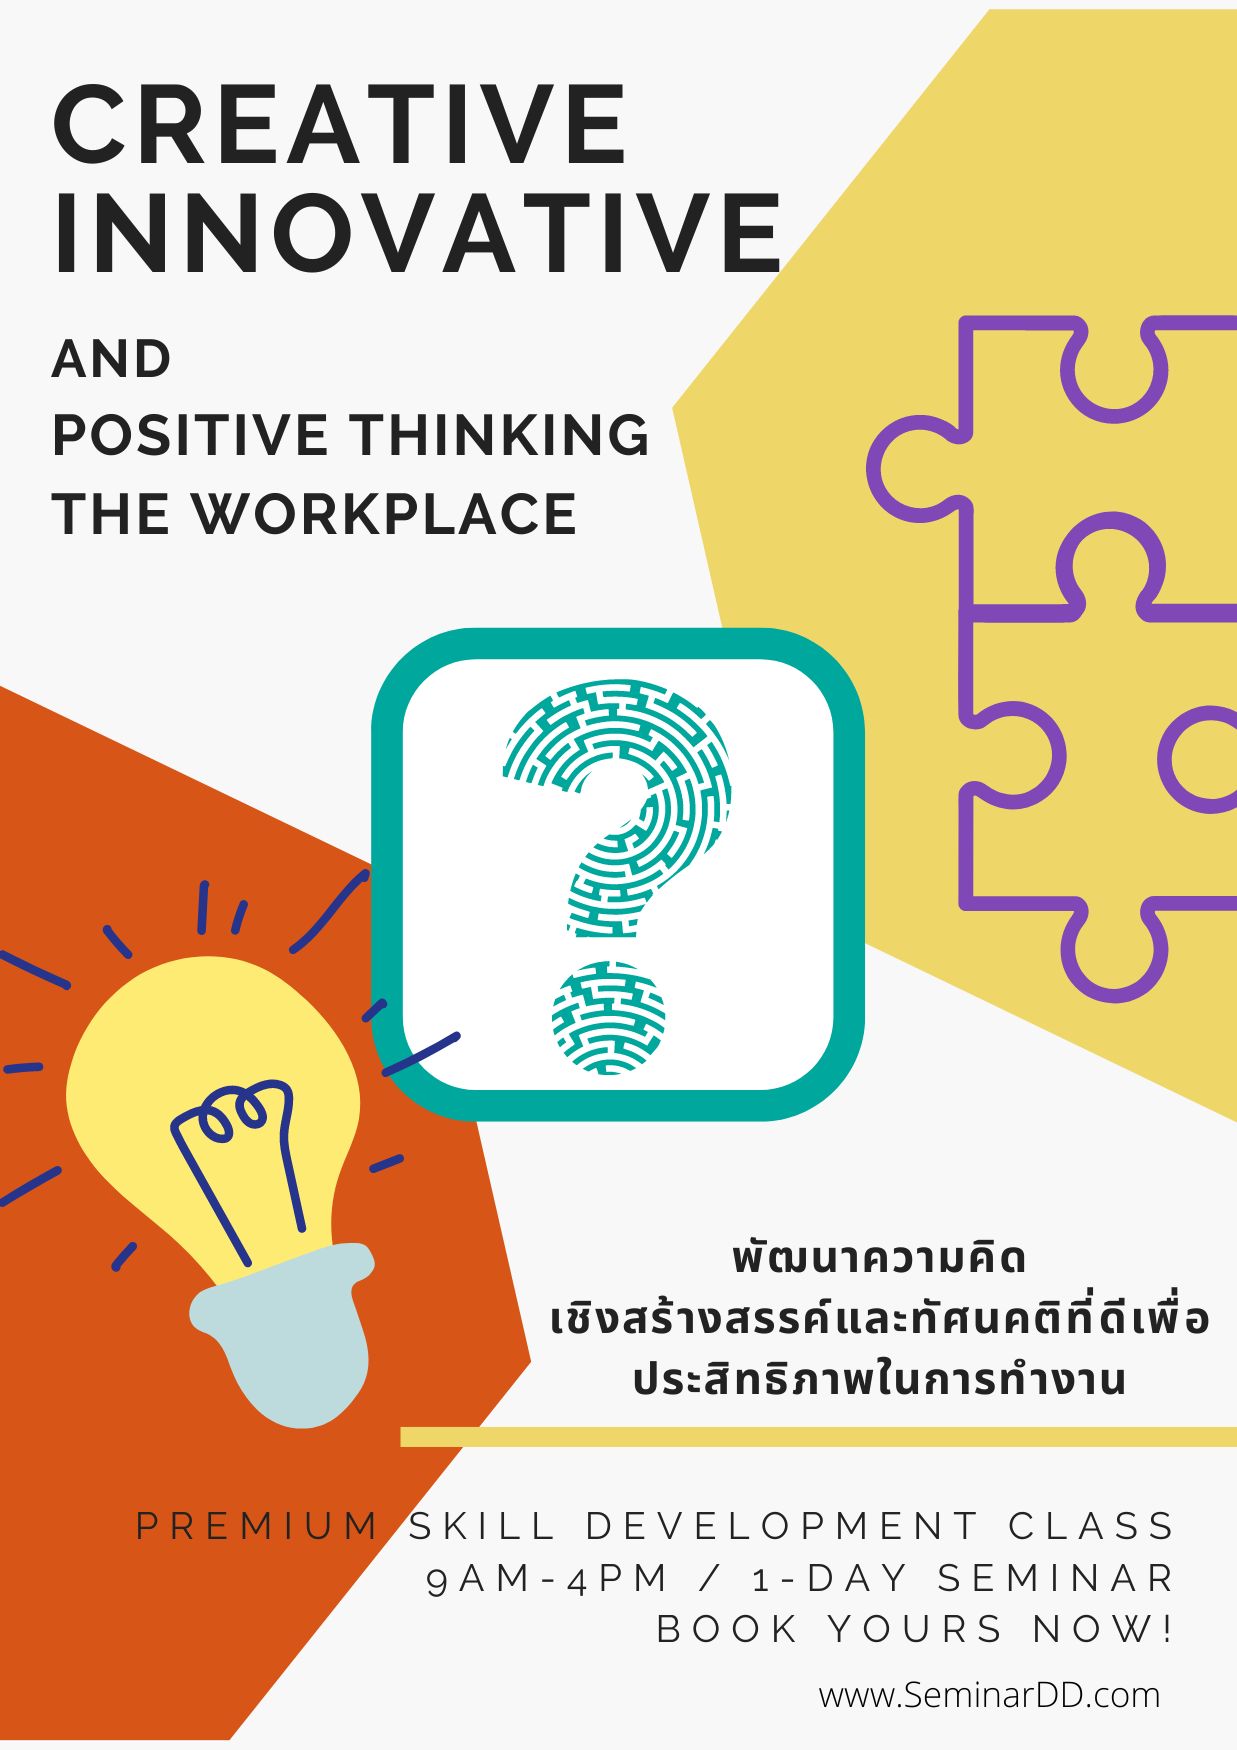 อบรม หลักสูตร พัฒนาความคิดเชิงสร้างสรรค์ และทัศนคติที่ดีเพื่อประสิทธิภาพการทำงาน ( Creative Innovative and Positive Thinking in the Workplace ) - อบรมในรูปแบบ online ผ่าน zoom